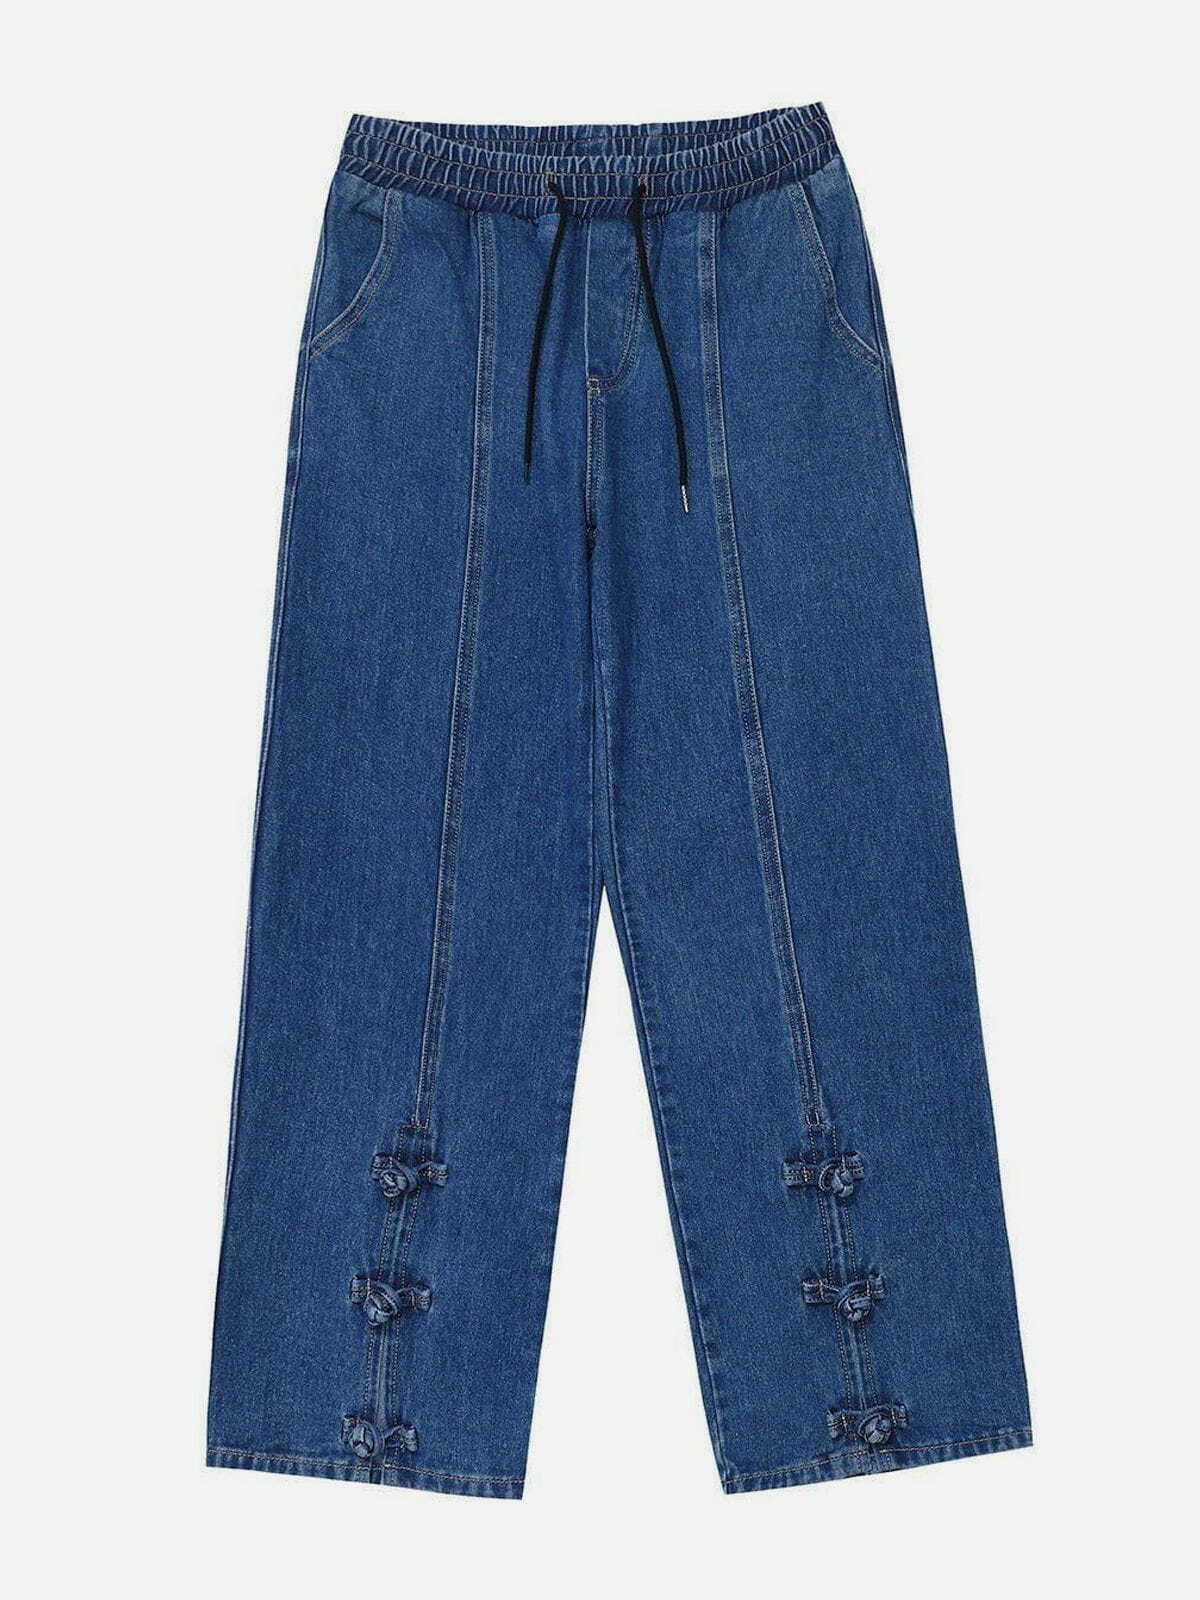 vintage buckle slit jeans edgy streetwear essential 5543